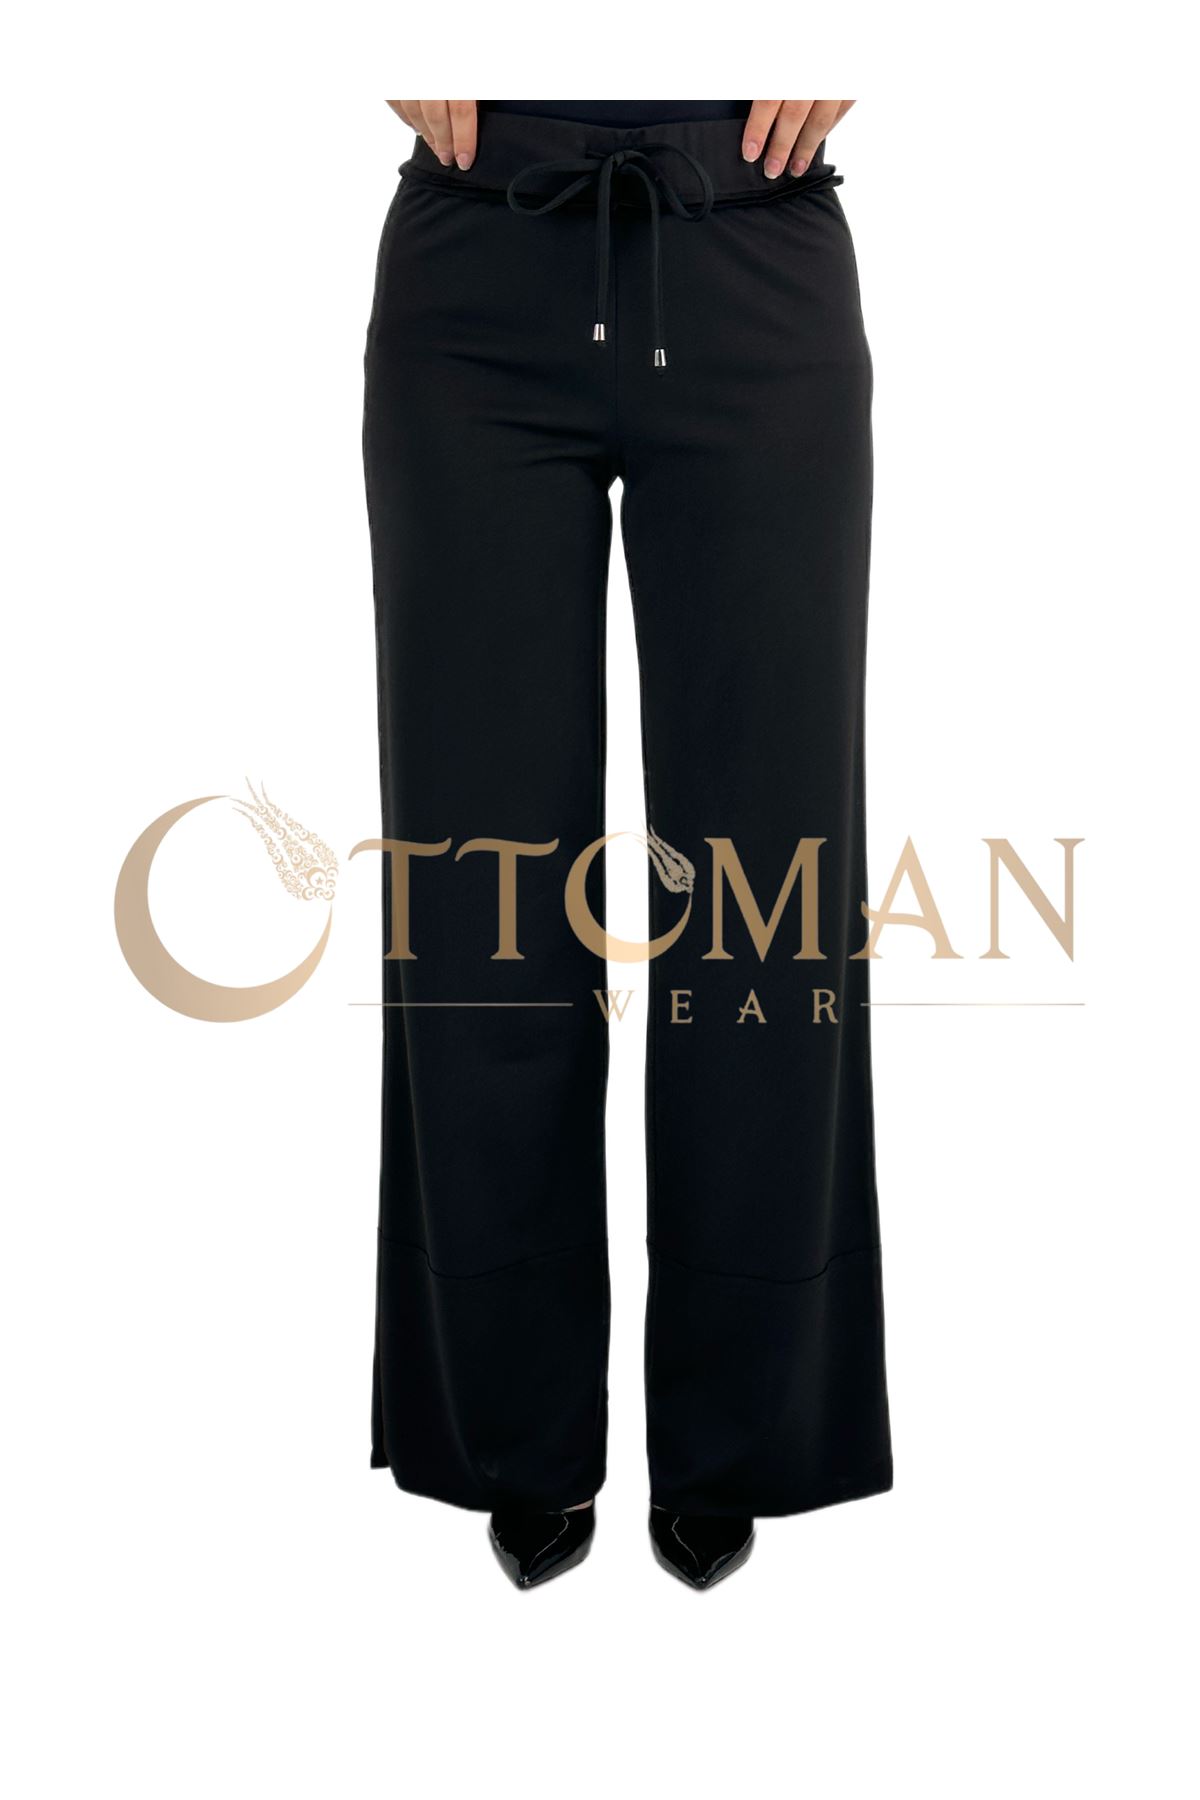 OTW5384 Geniş Örme Pantolon Siyah